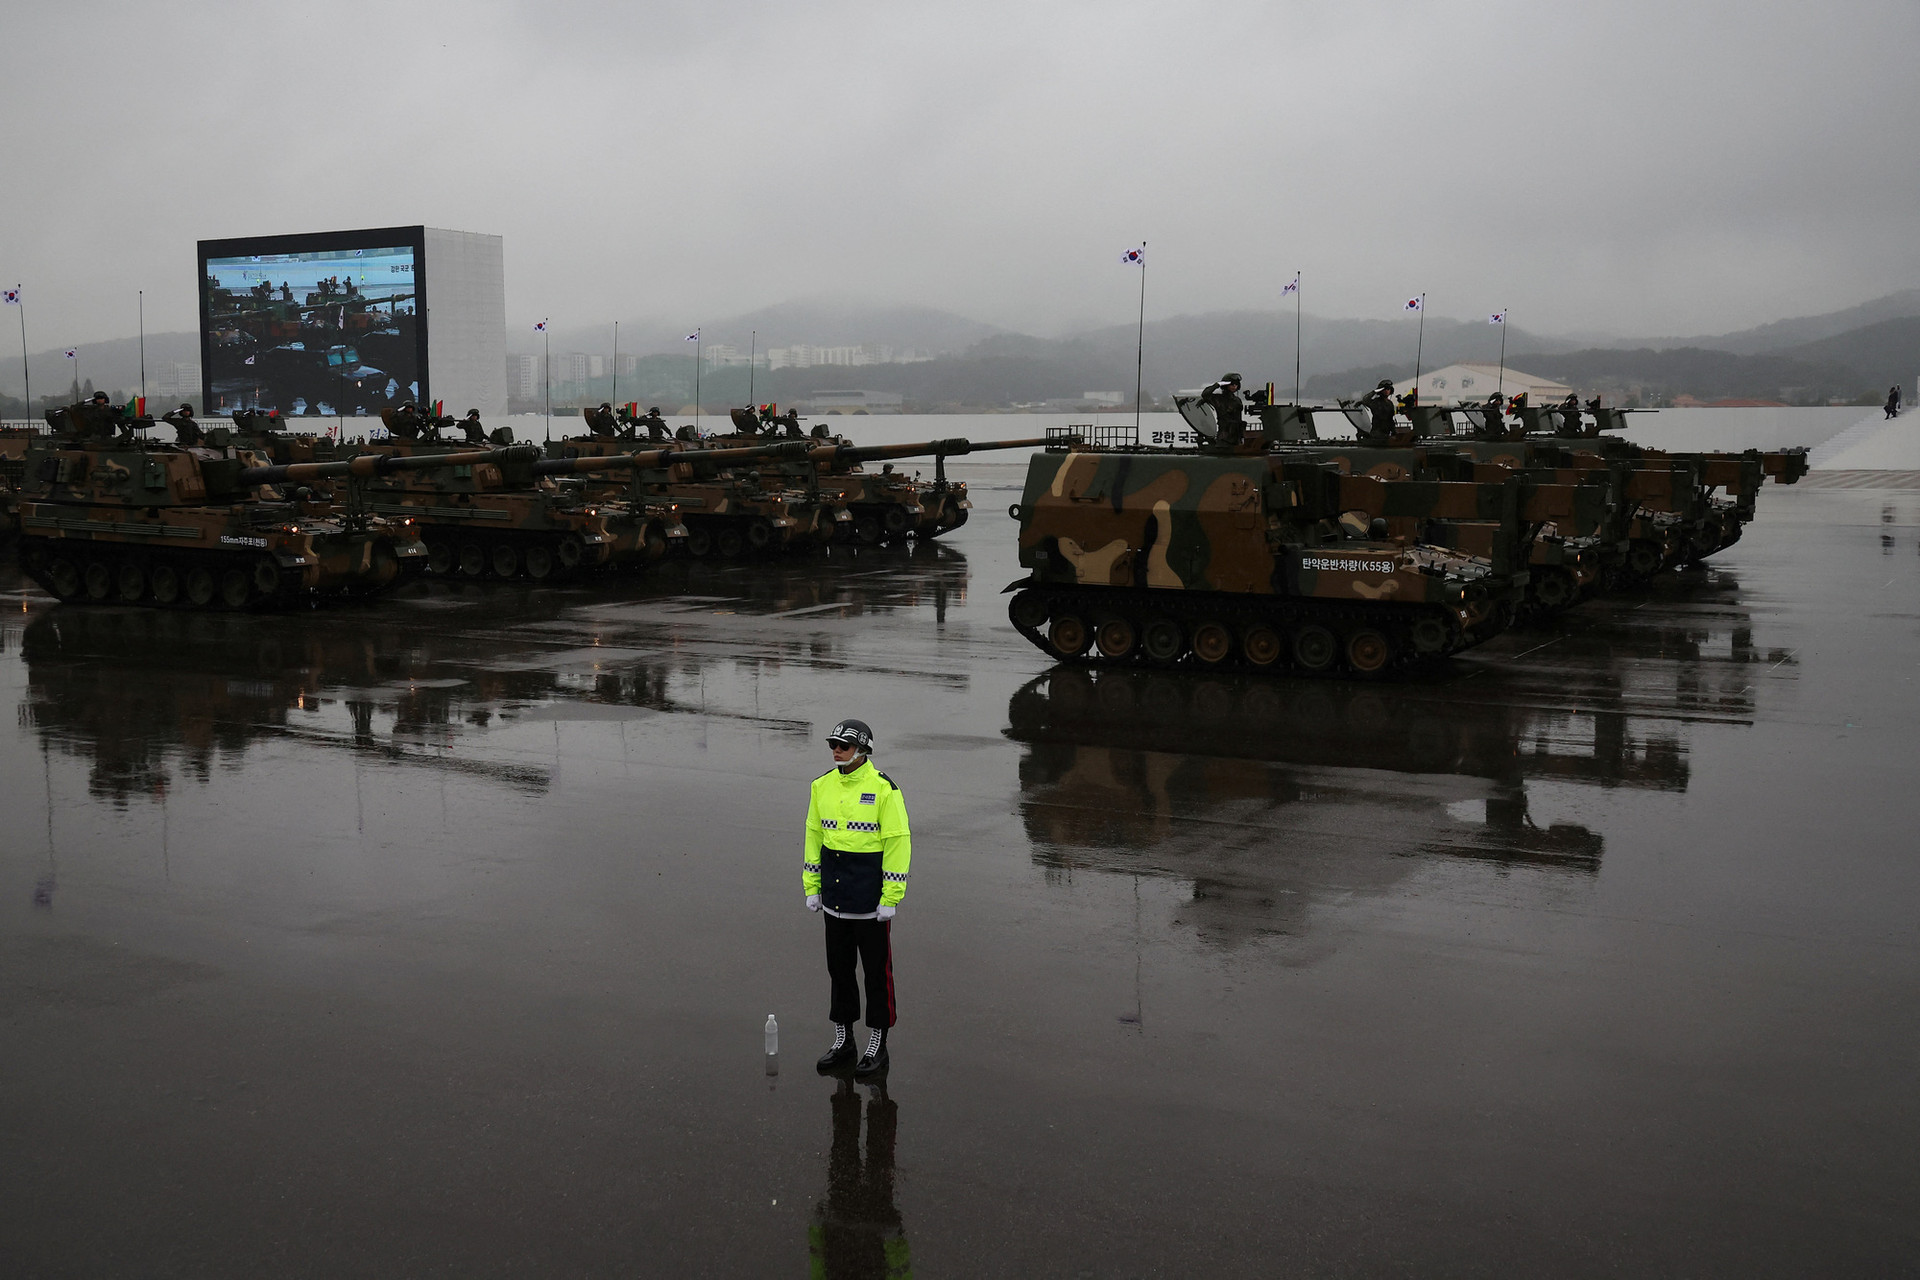 Xe quân sự của Hàn Quốc xuất hiện trong buổi duyệt binh - Ảnh: REUTERS